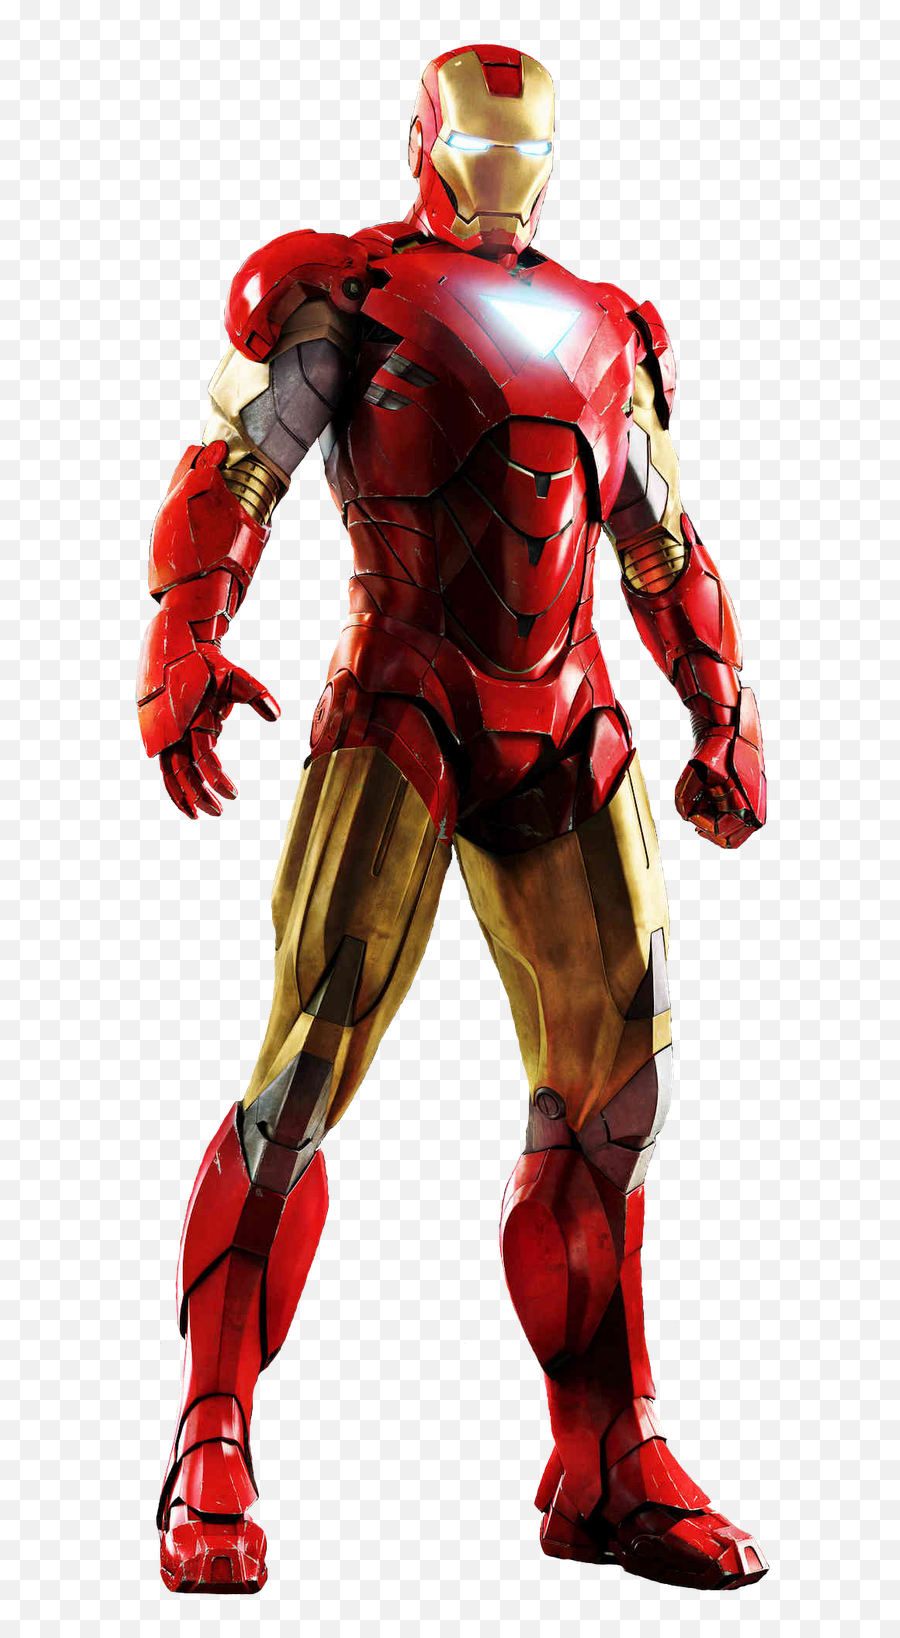 Download Iron Man Image Hq Png Image In - Iron Man Full Body Emoji,Iron Man Emoji